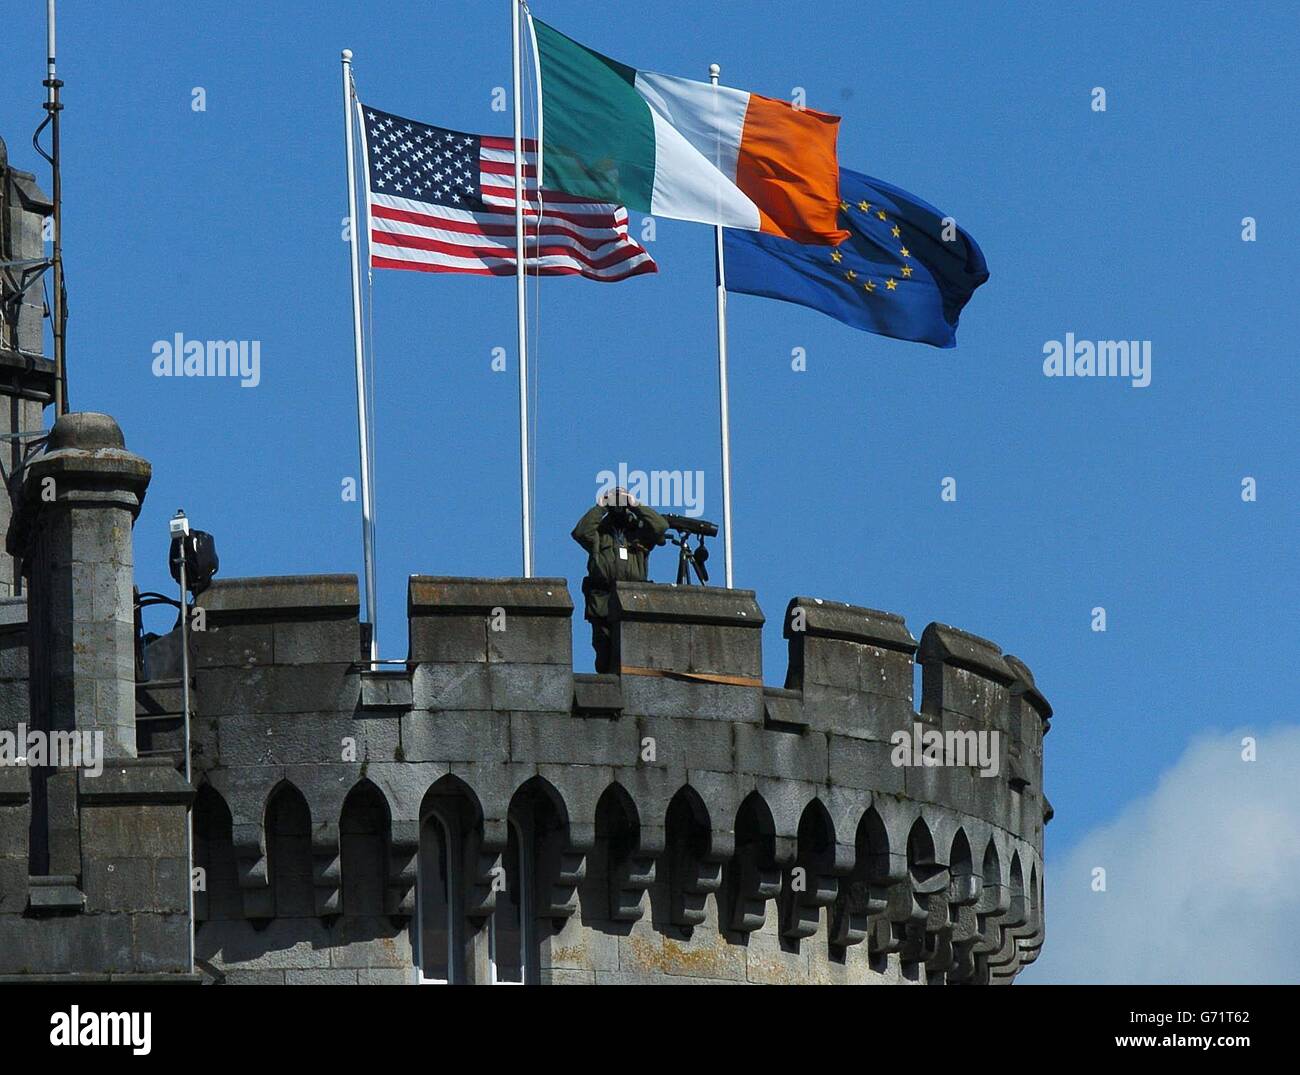 Die Flaggen der USA, Irlands und der EU fliegen über Dromoland Castle, County Clare, Irland, während ein Offizier die umliegende Landschaft beobachtet. Stockfoto